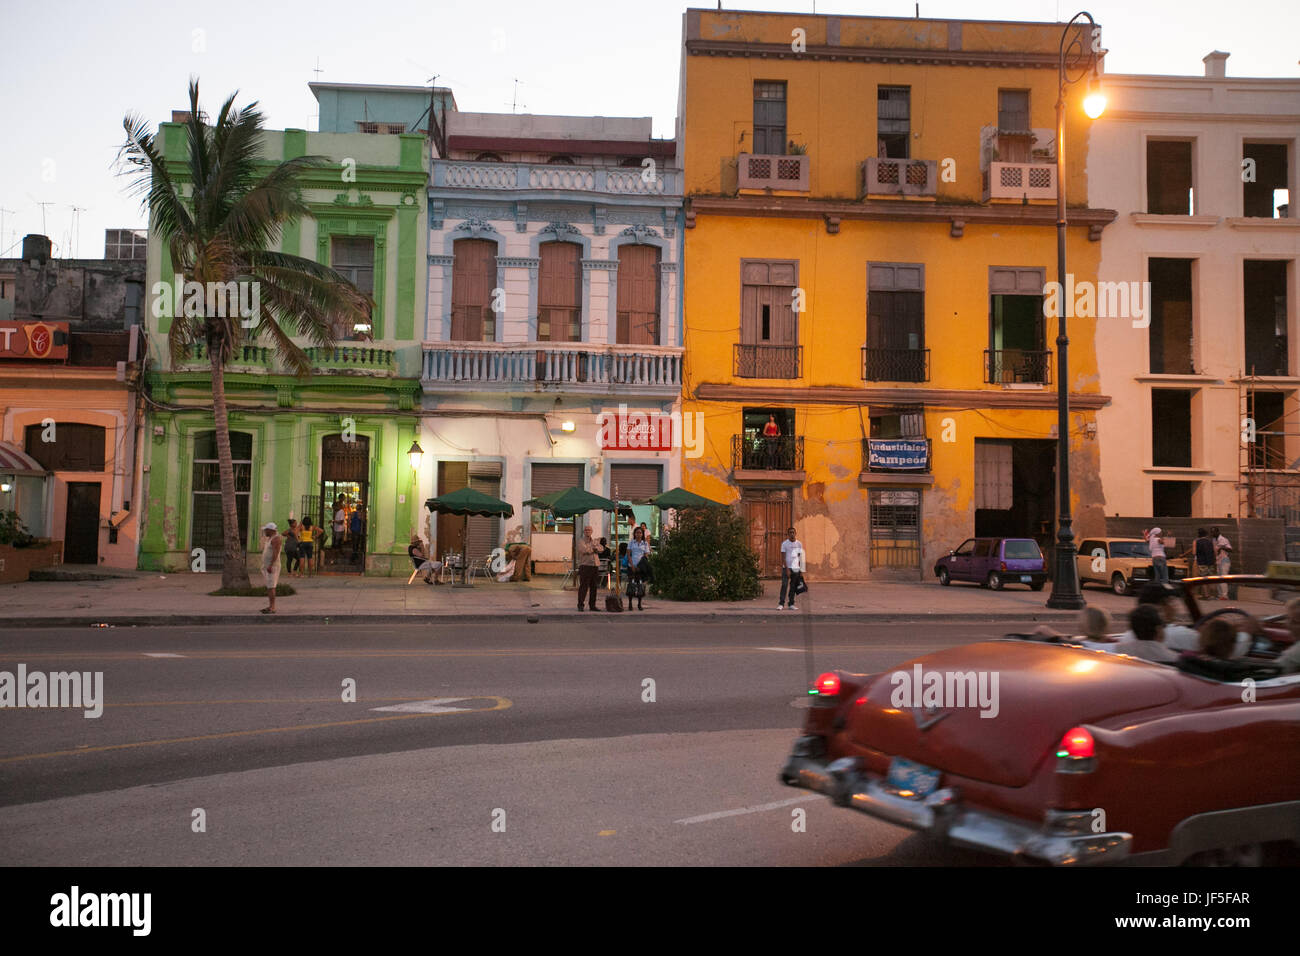 Al tramonto, le persone in piedi sulla strada come un classico americano auto rigidi mediante nel centro di Havana. Foto Stock